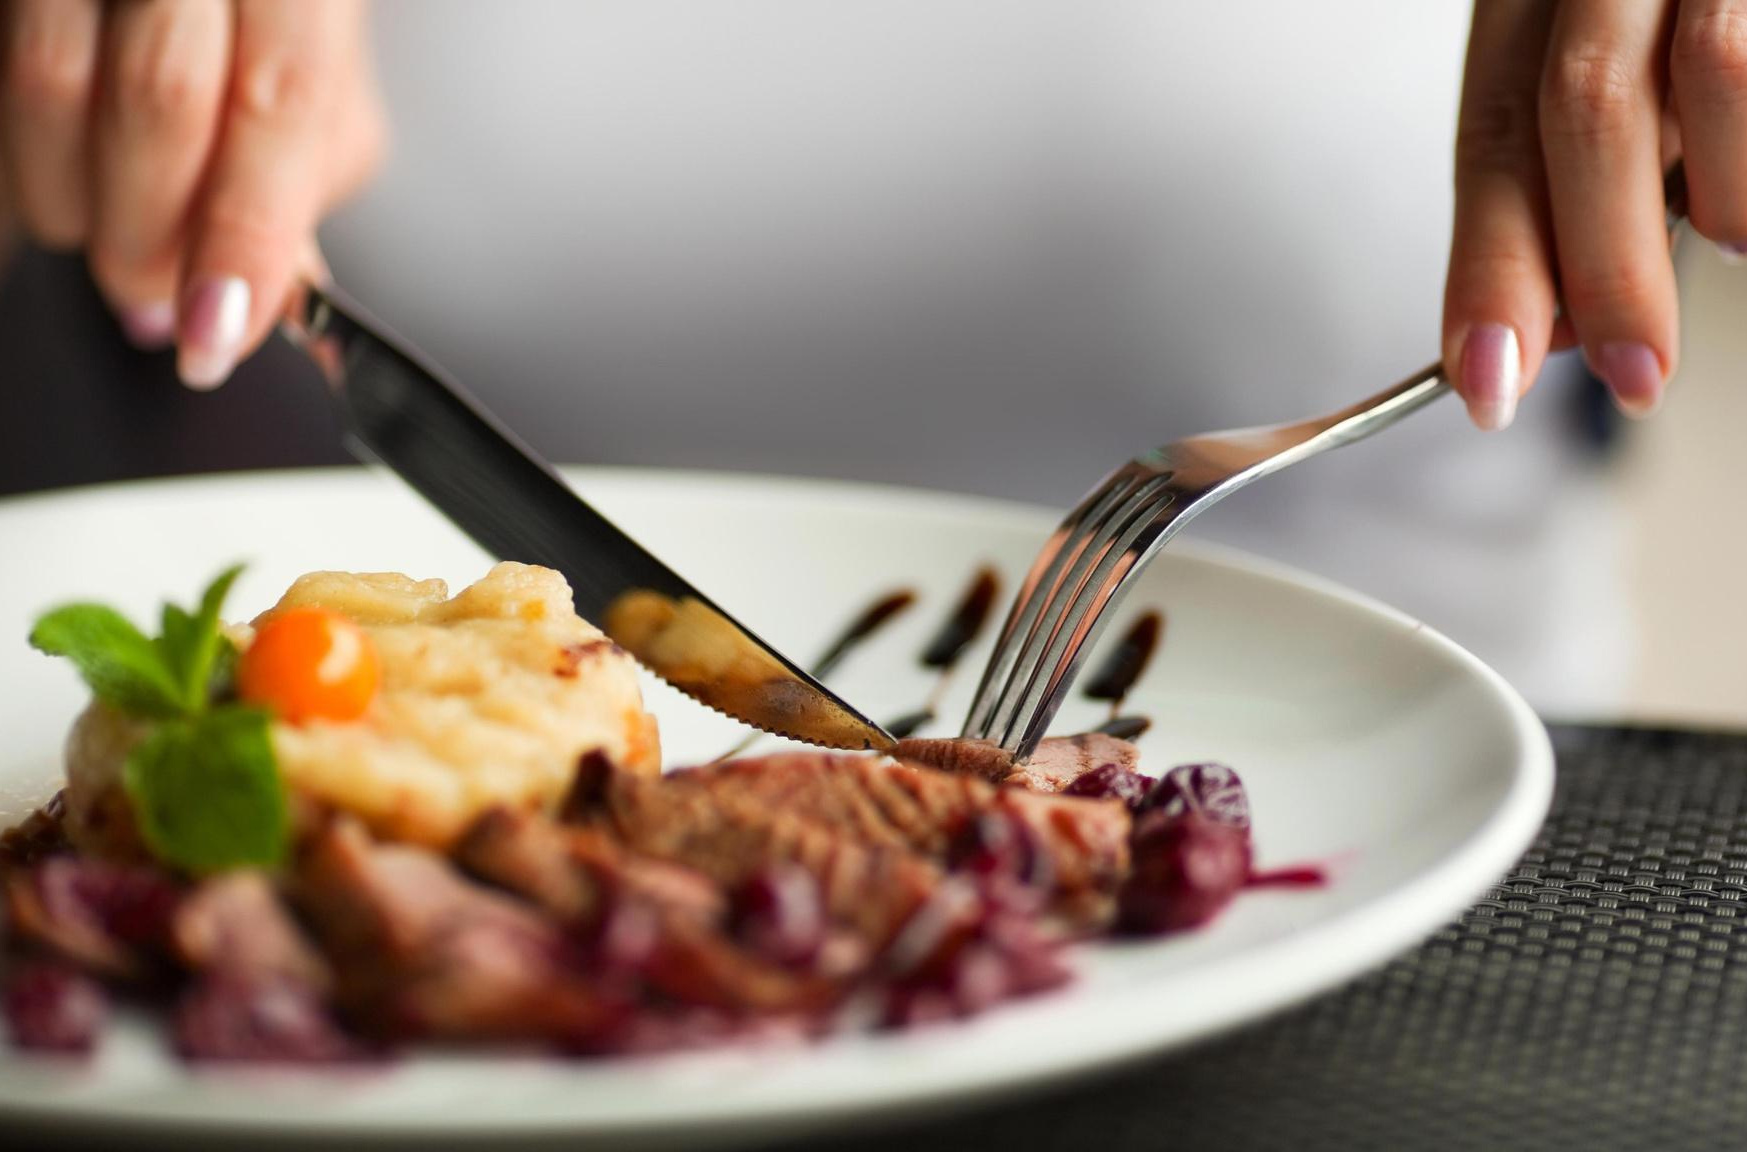 Сонник вкусно есть. Еда с вилкой и ножом. Еда в ресторане. Тарелка с едой в руках. Кушать вилкой и ножом.